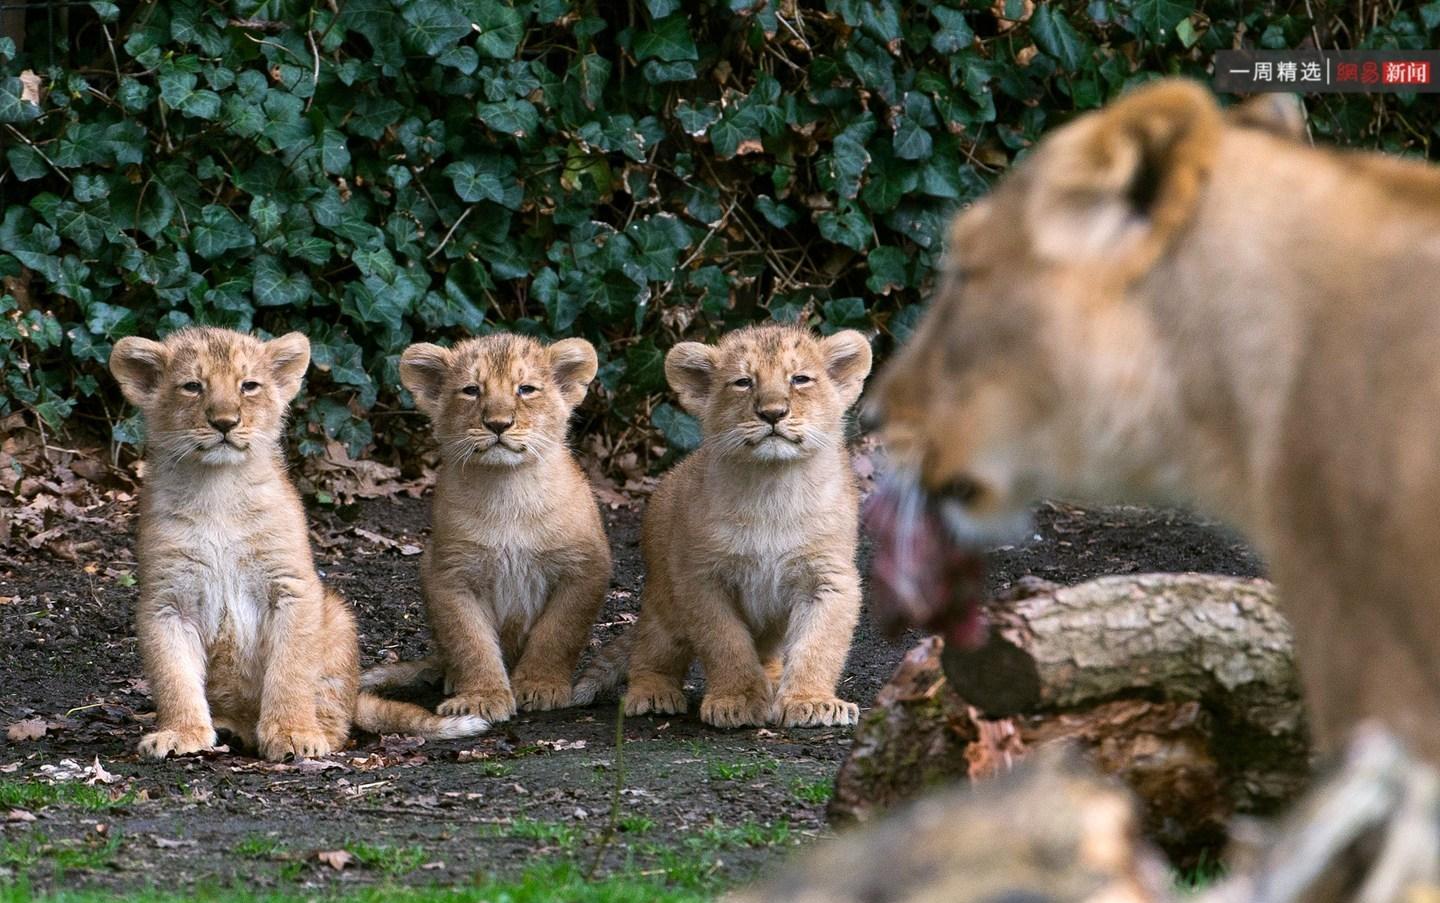 2016年3月30日,三只小狮子坐在母狮旁边.